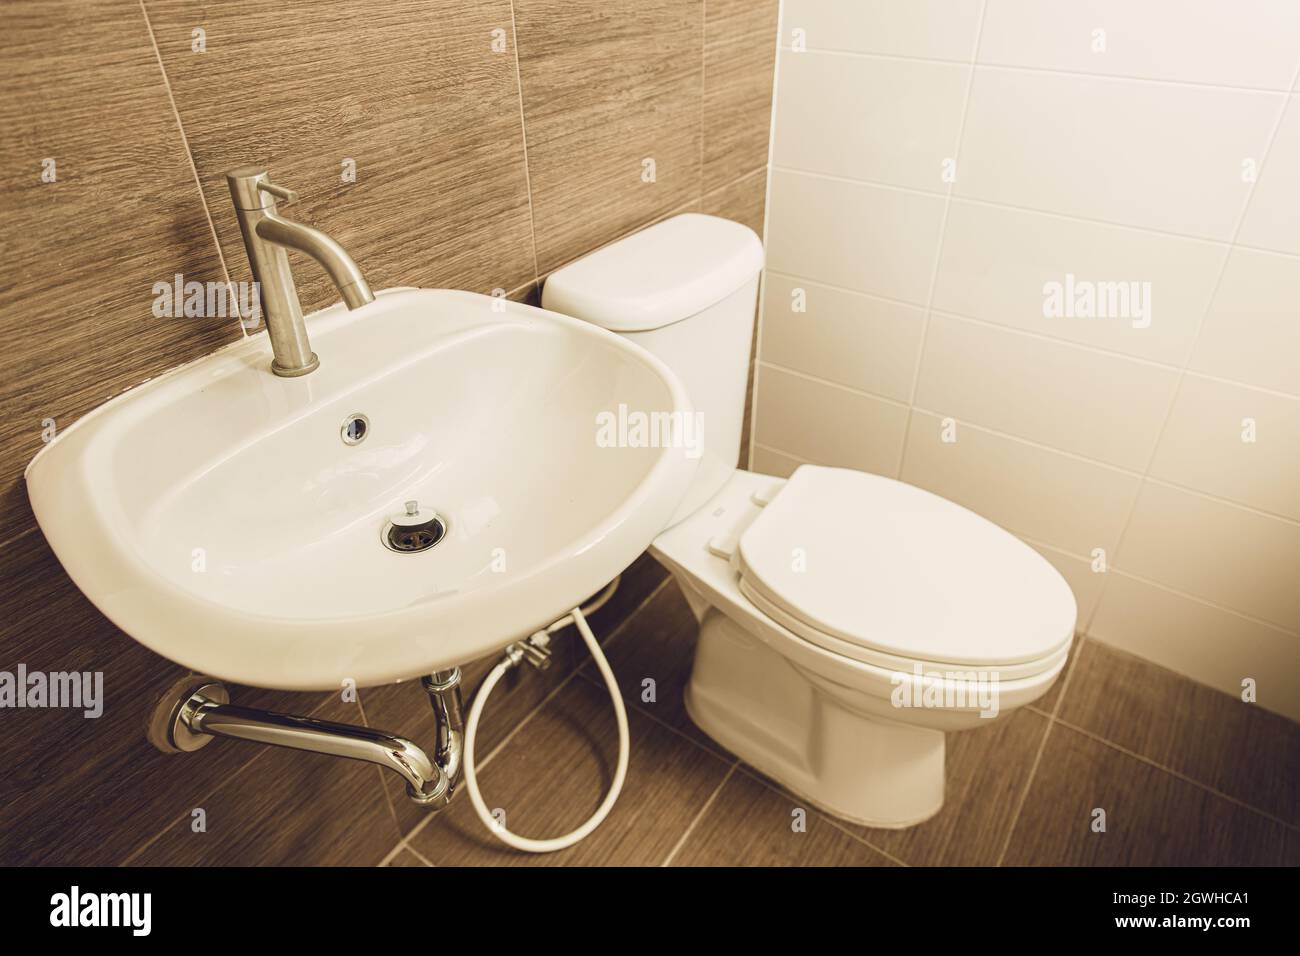 Lavabo pour les mains et cuvette de toilette dans la salle de bains de la maison. Banque D'Images